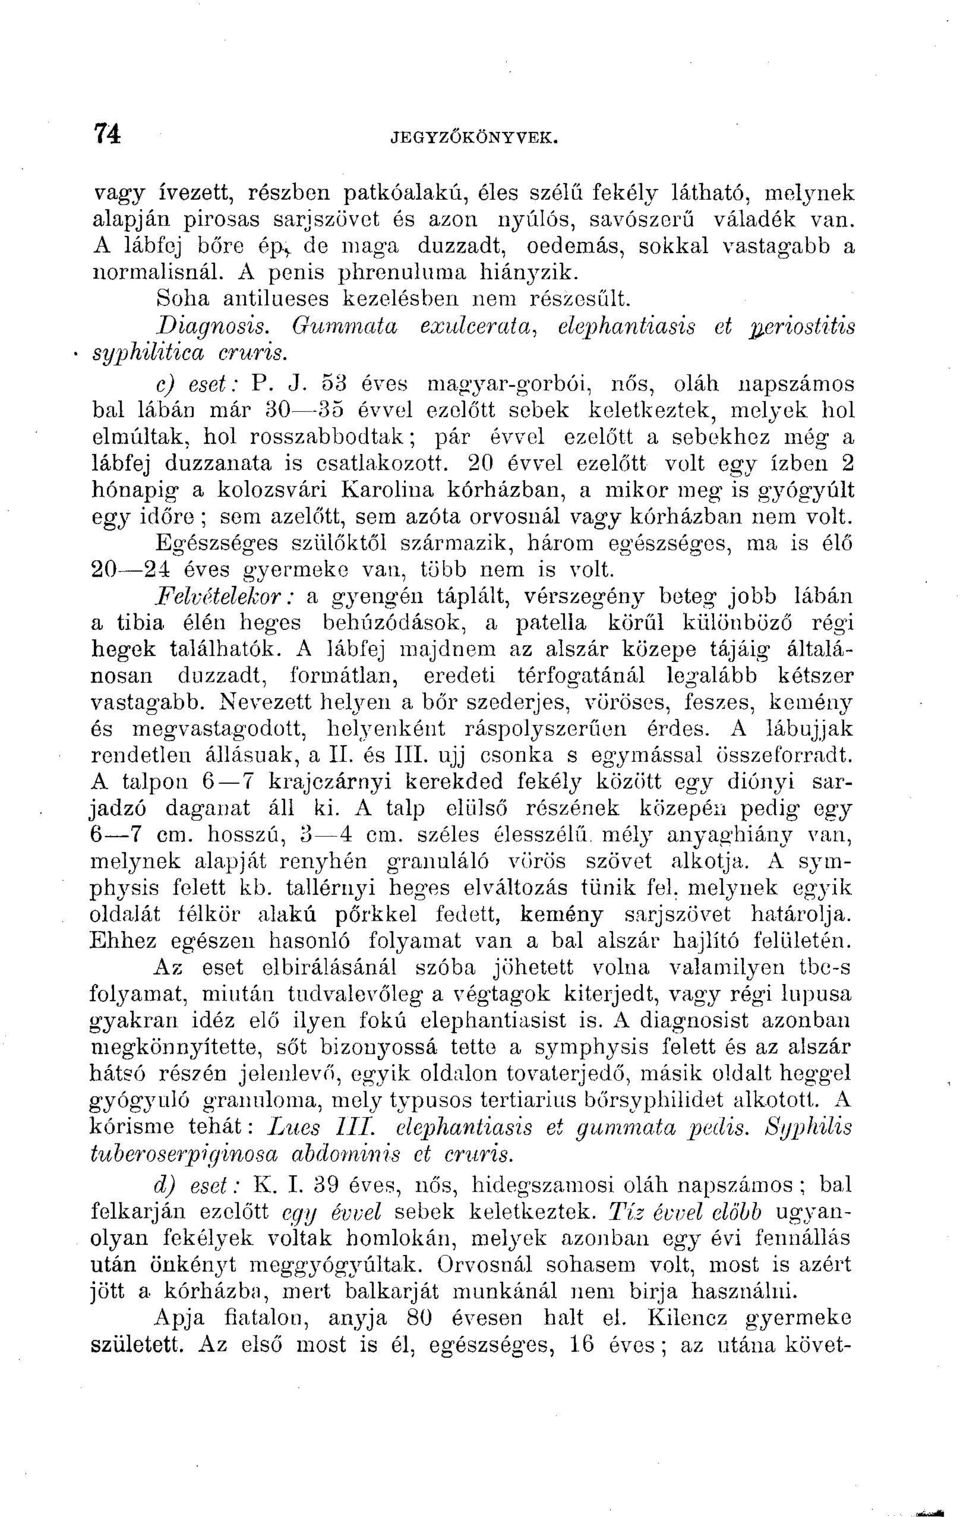 Gummata exulcerata, elephantiasis et ^eriostitis syphilitica cruris. c) eset: P. J.